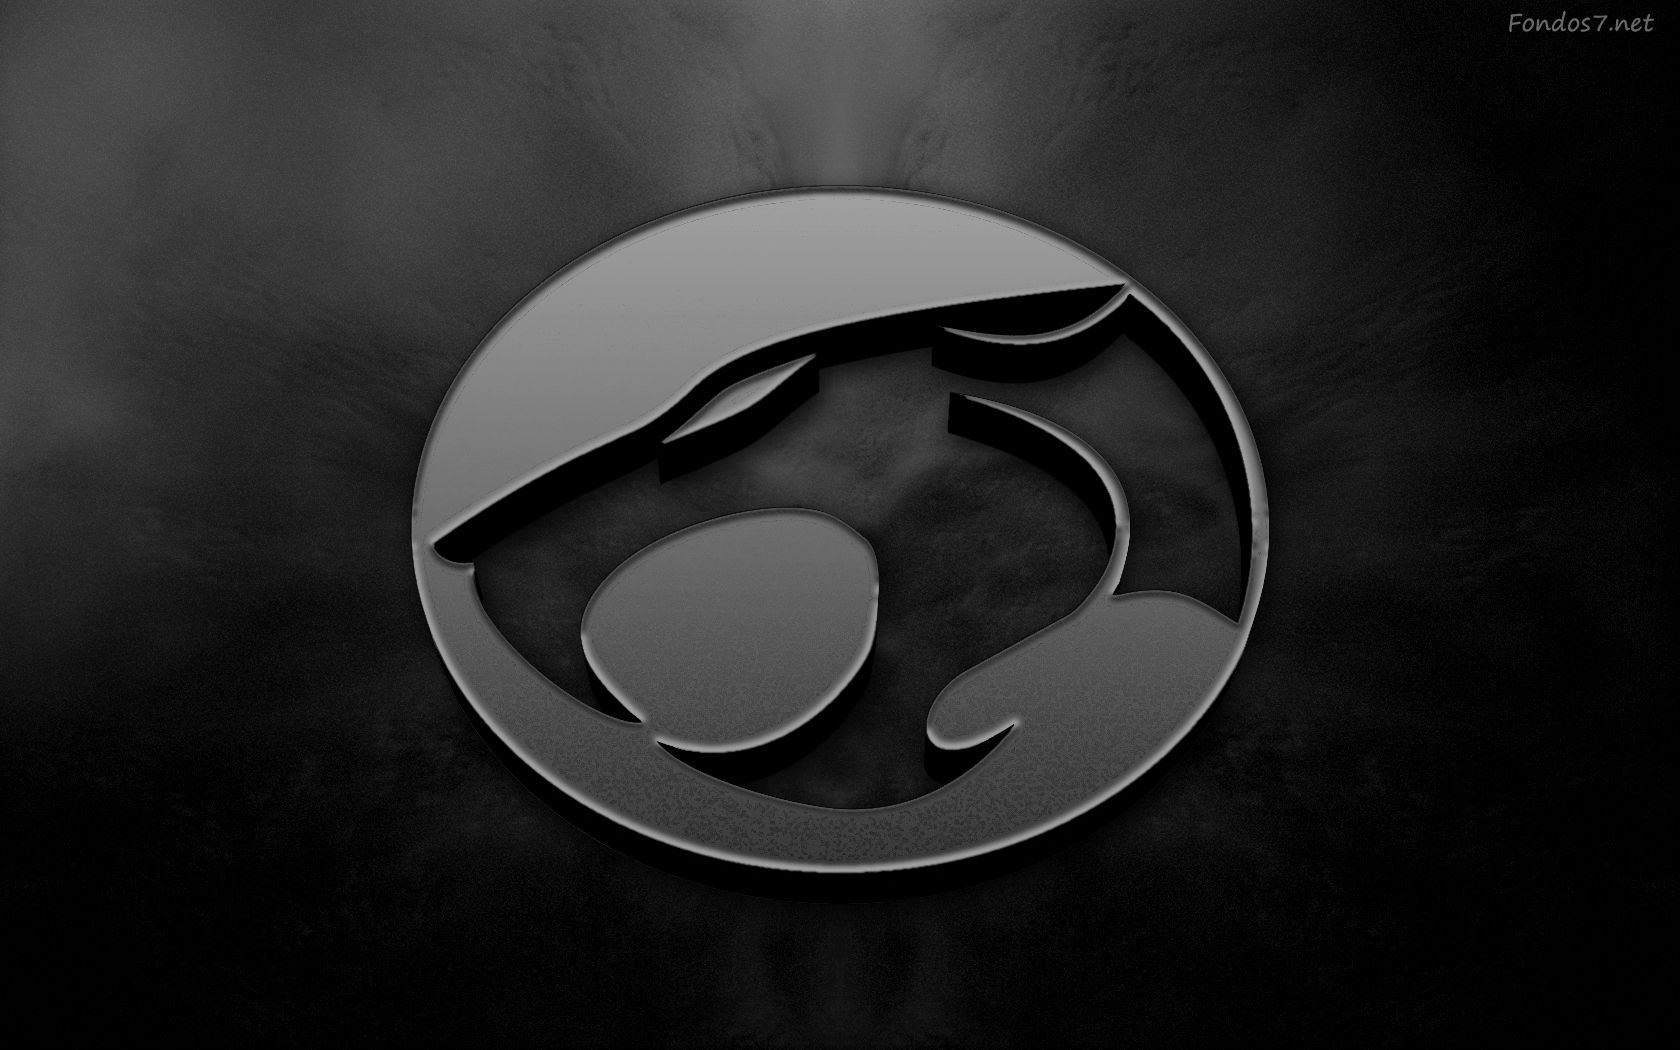 Descargar Fondos de pantalla thundercats logo hd widescreen Gratis